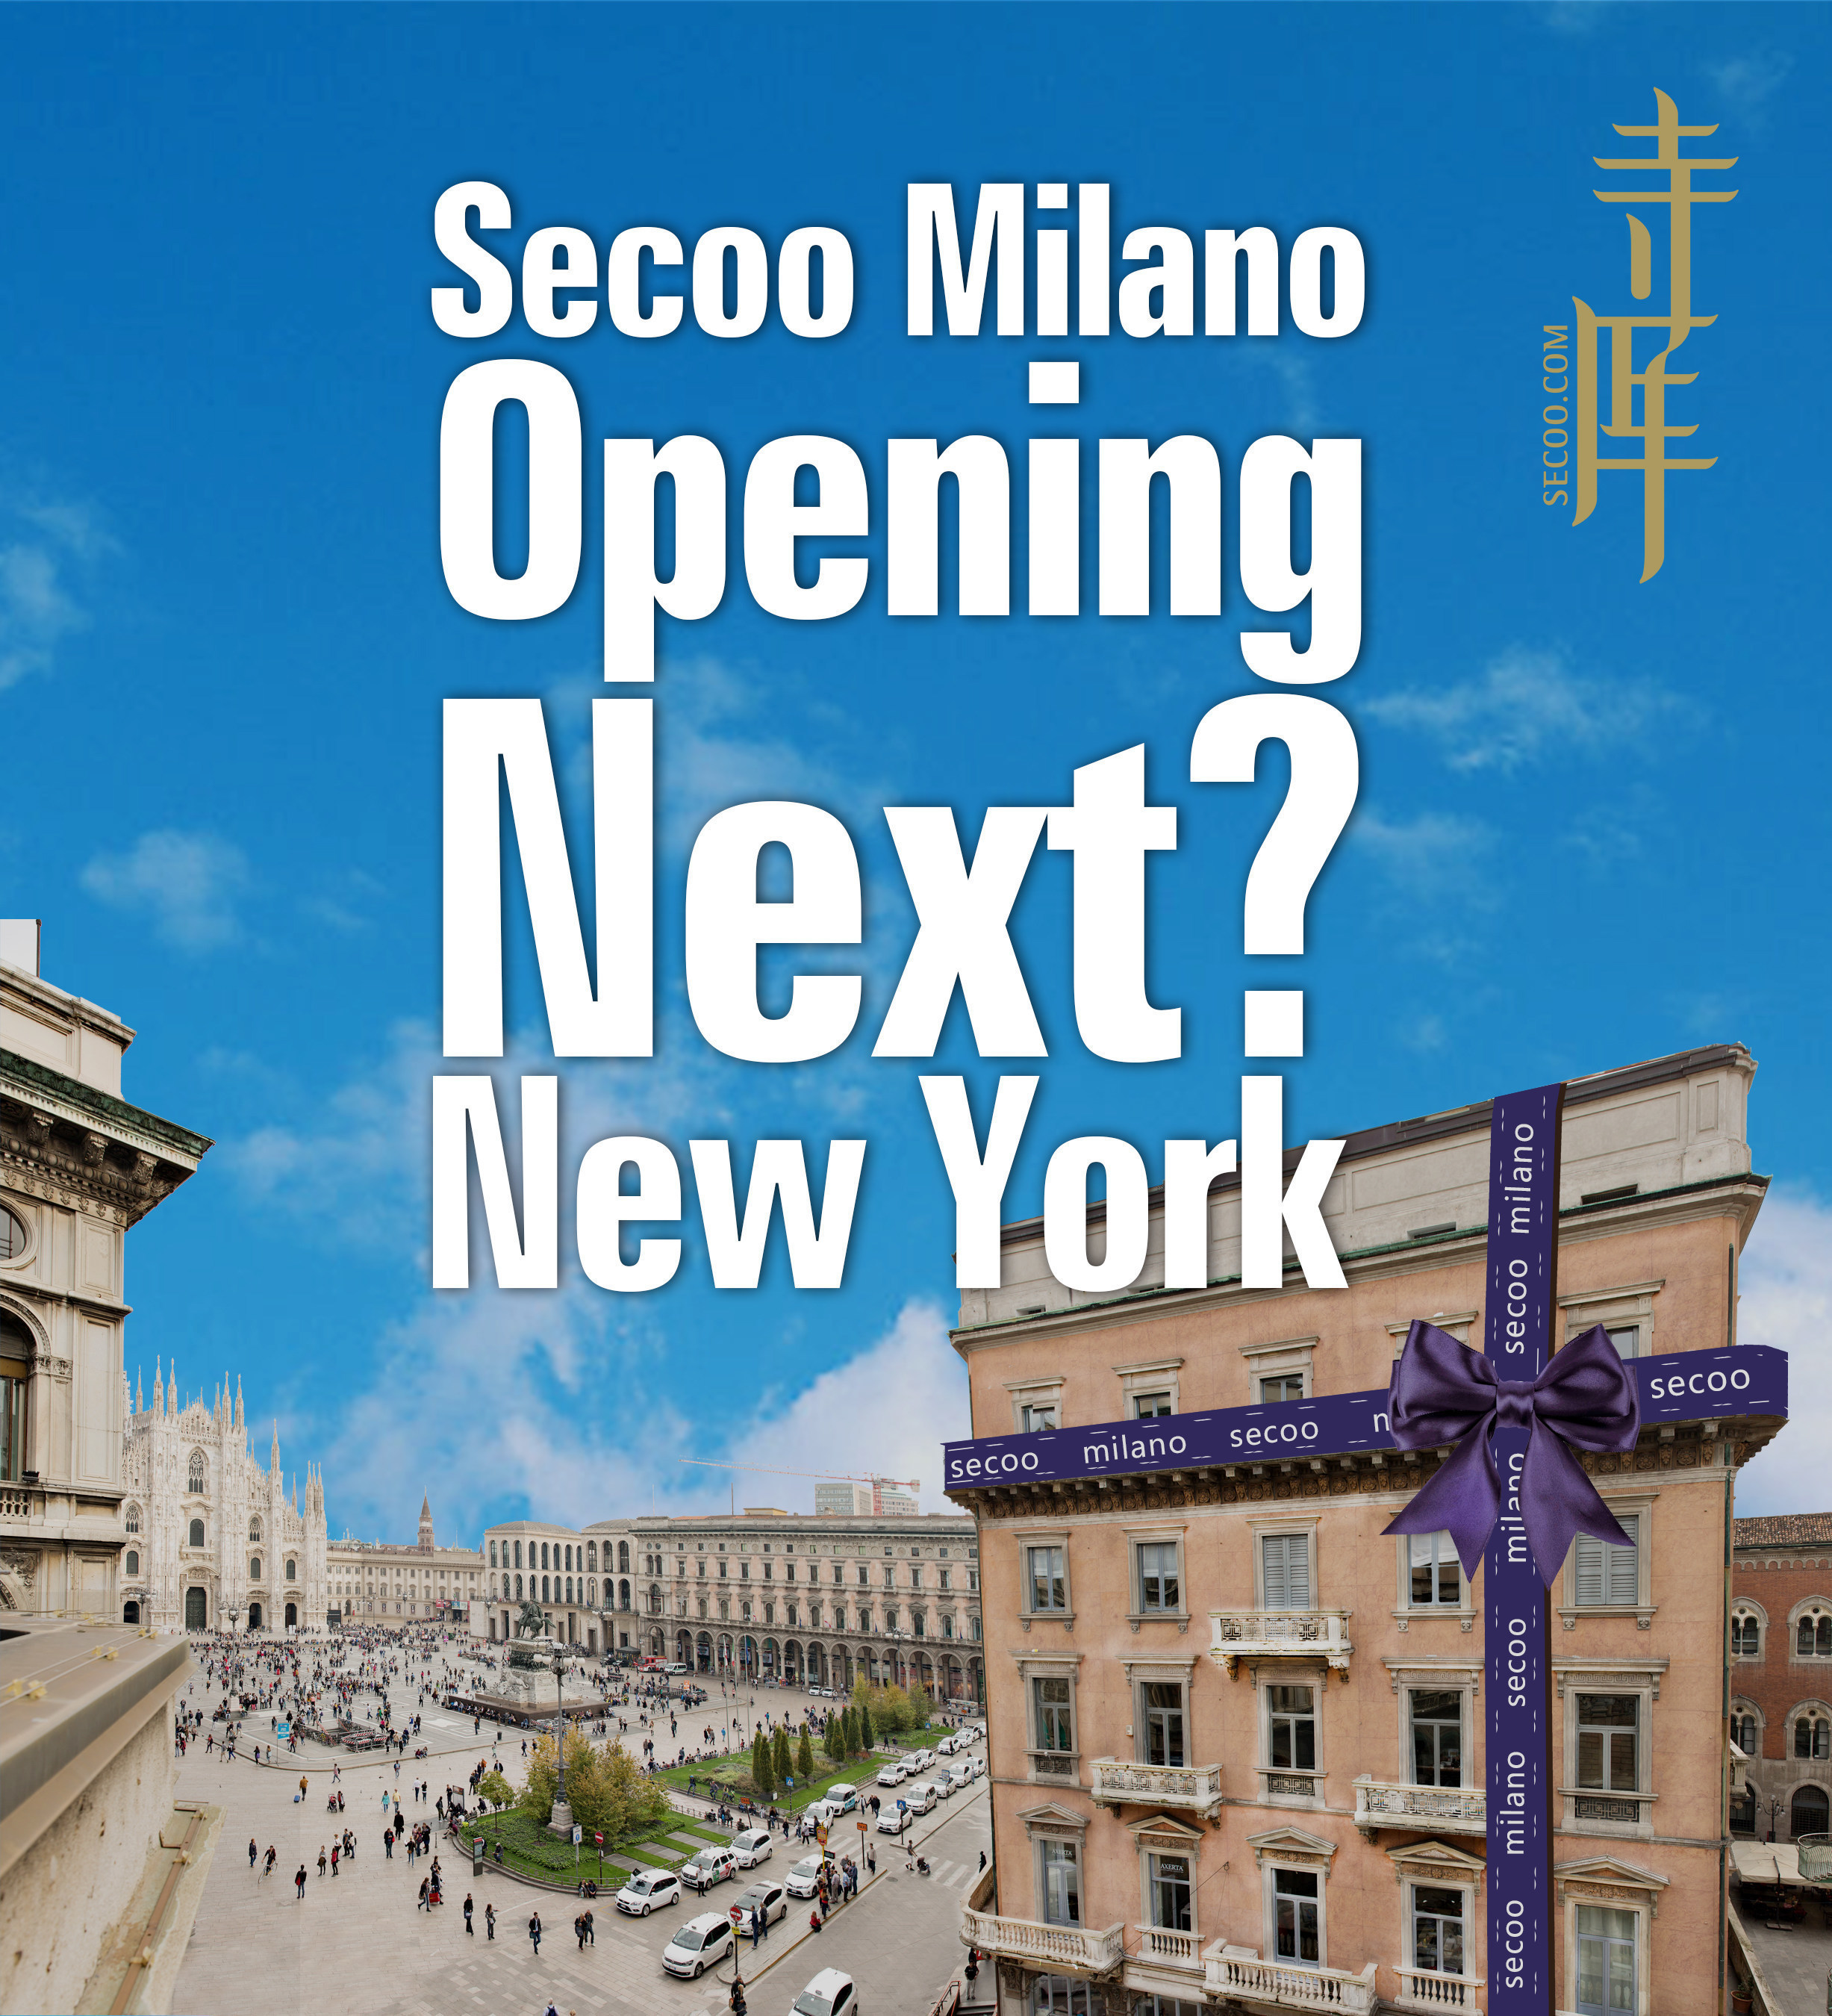 SECOO Milan Grand Opening